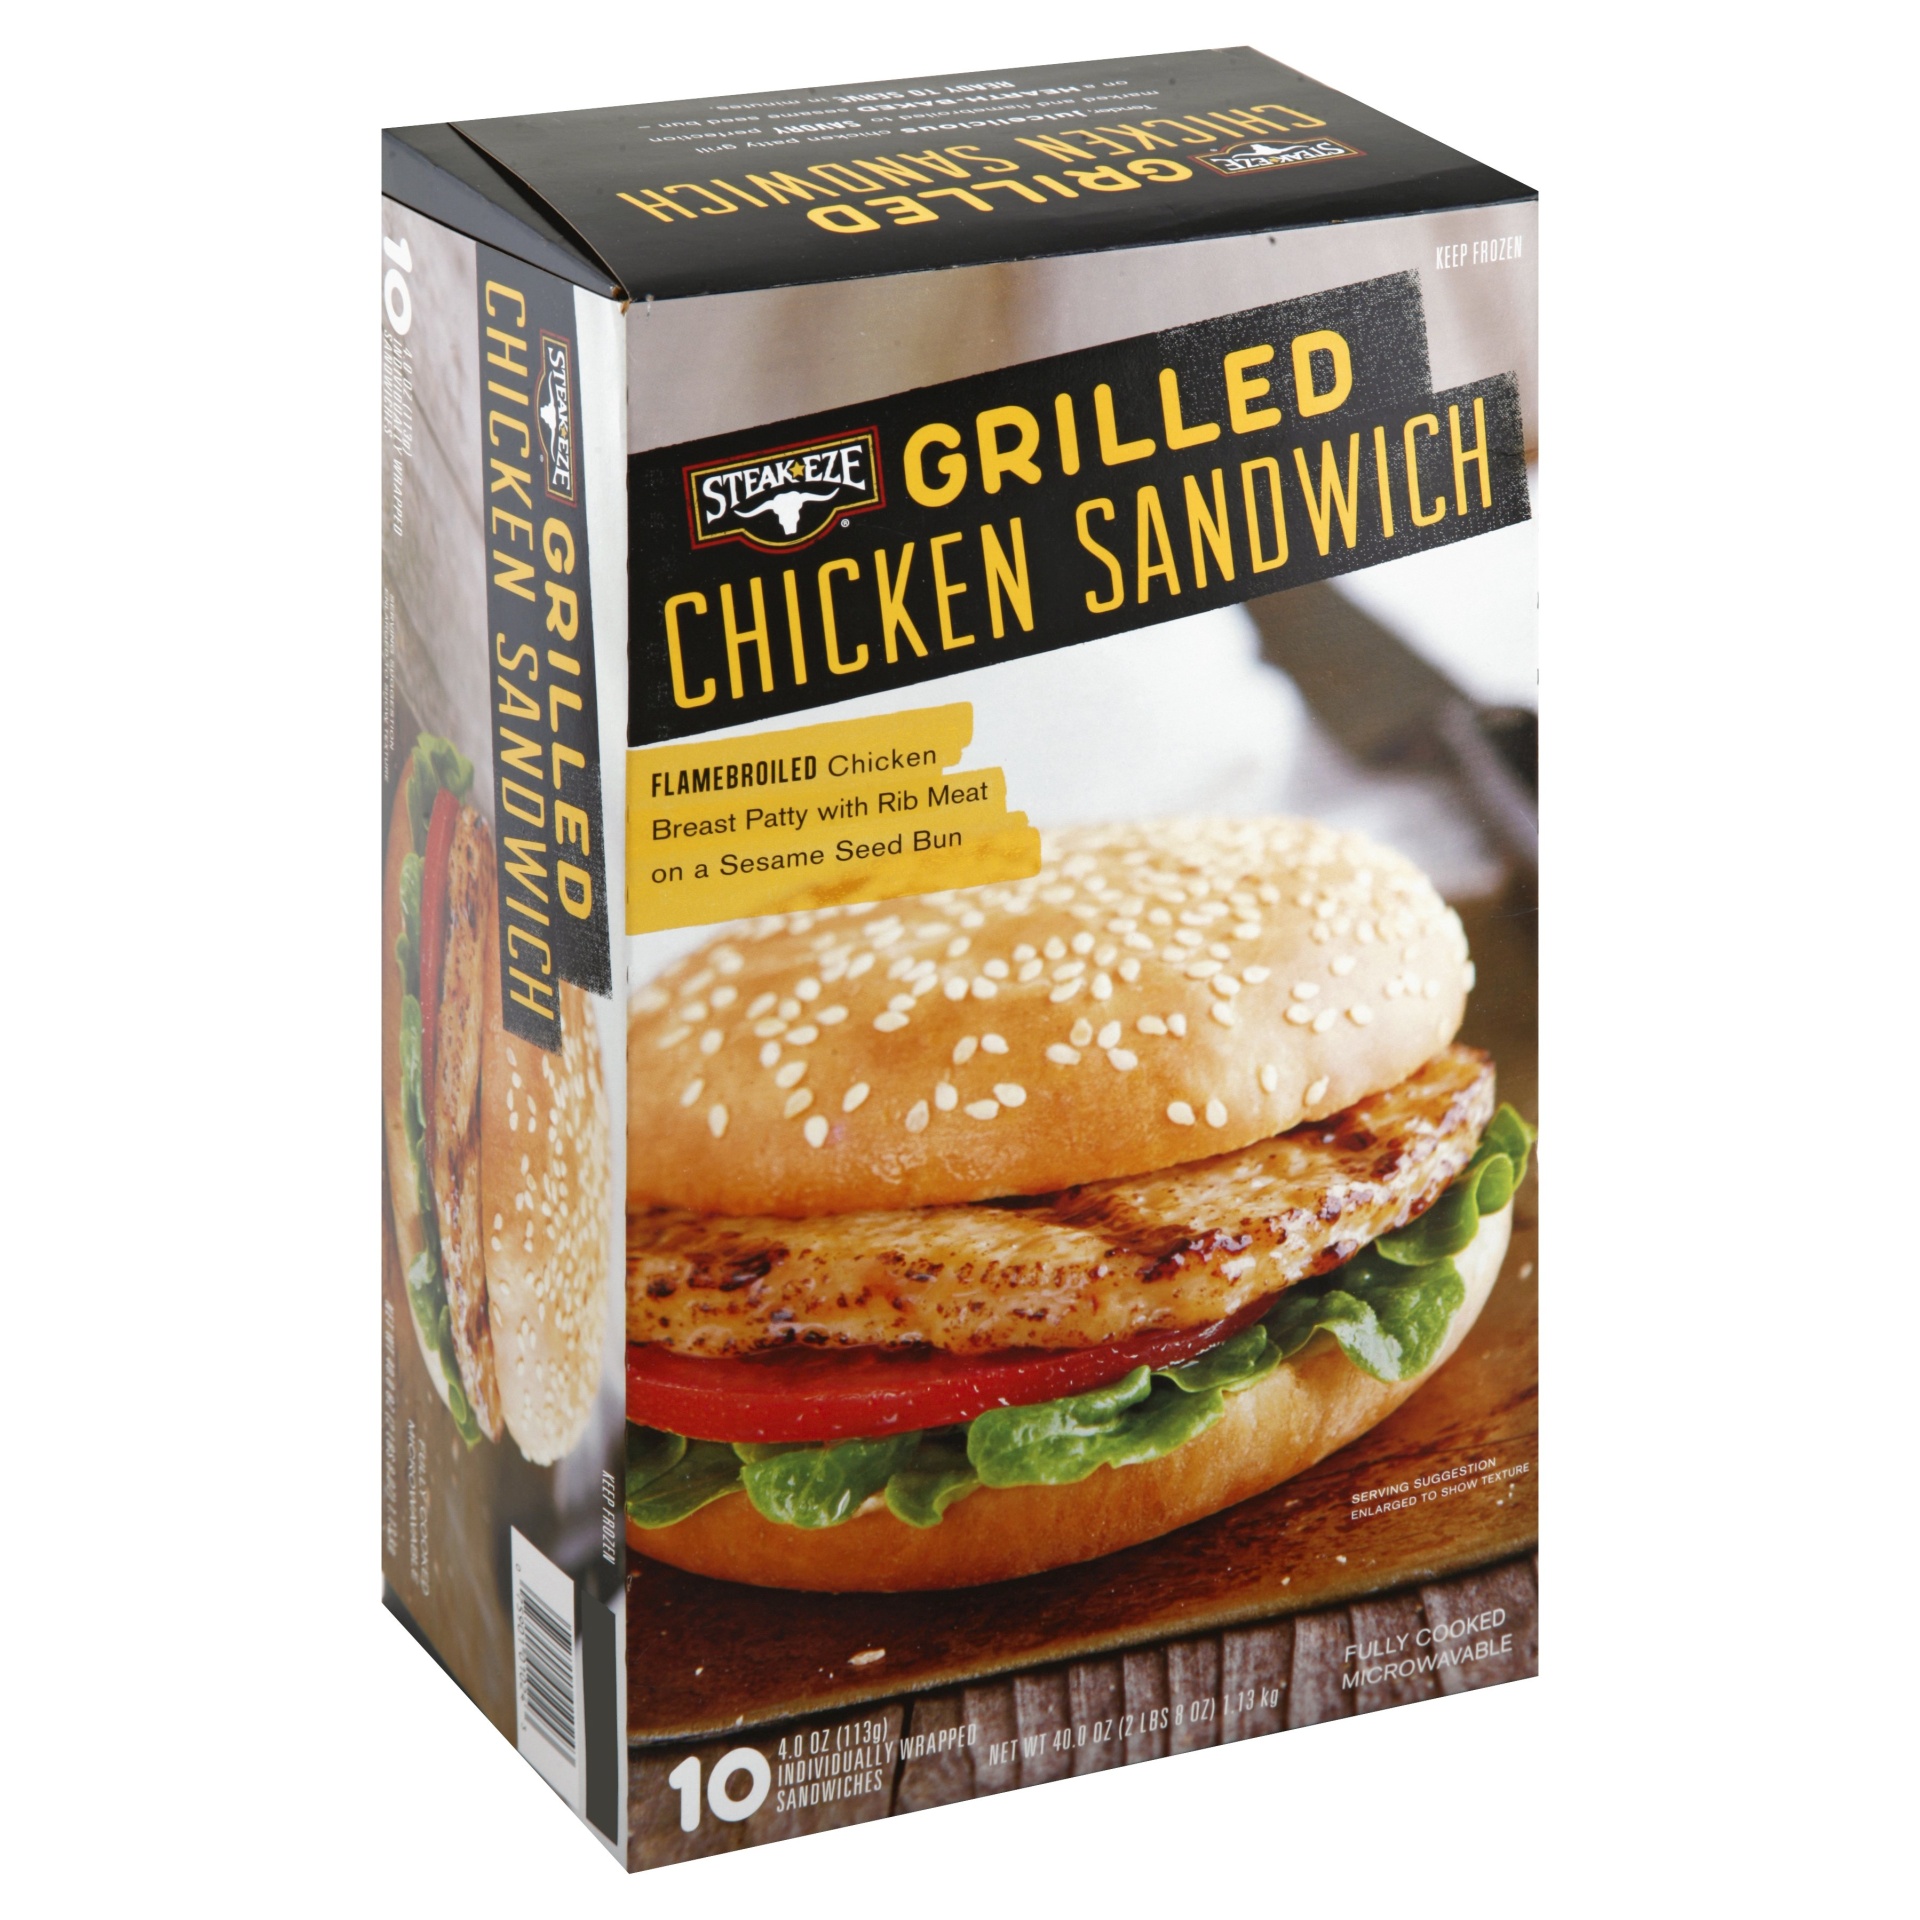 slide 1 of 1, AdvancePierre Steak Eze Grilled Chicken Sandwich, 40 oz